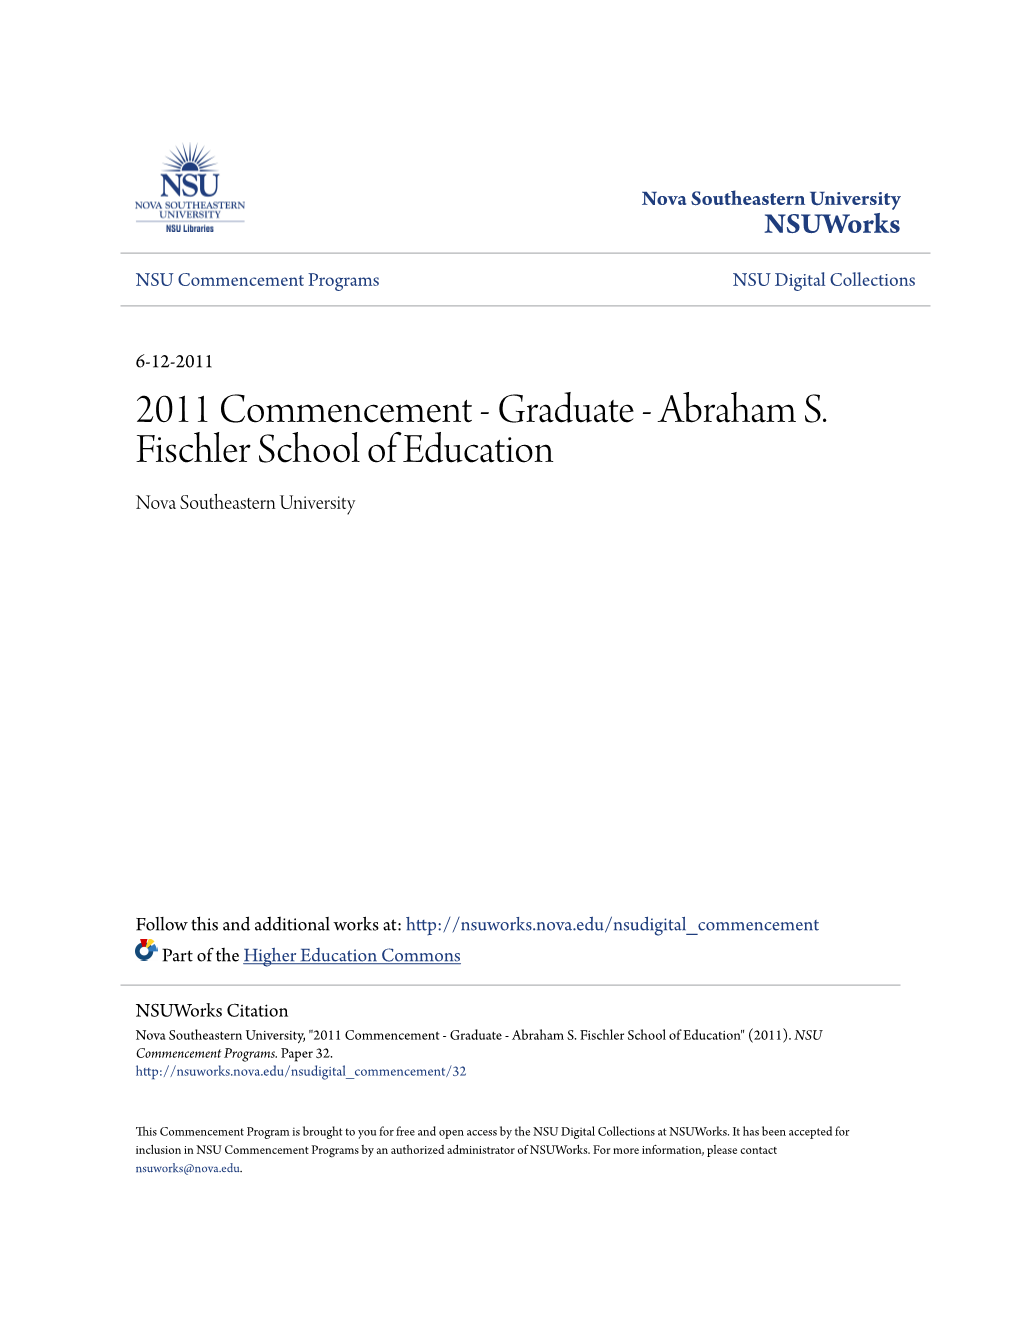 2011 Commencement - Graduate - Abraham S